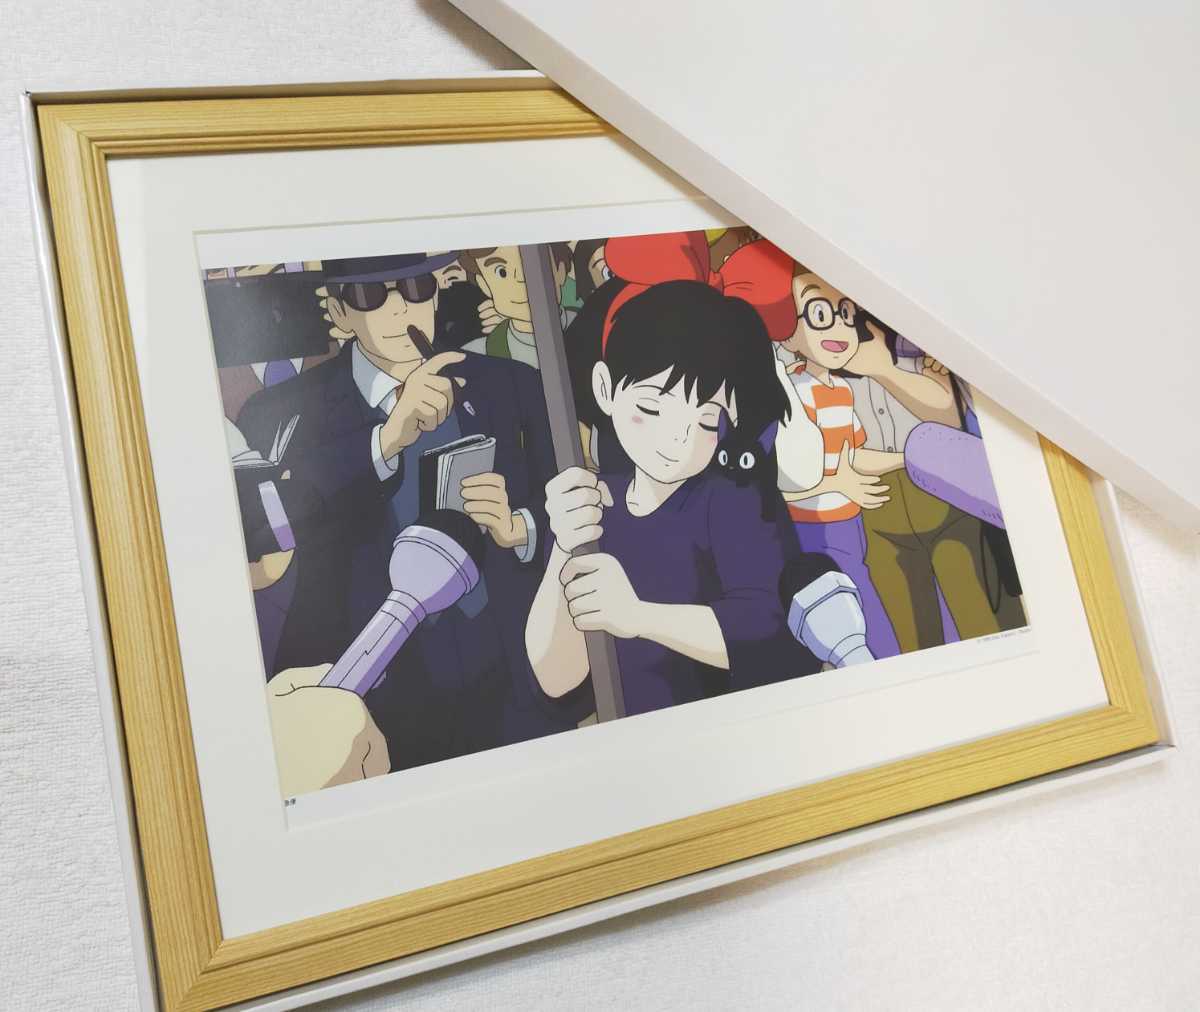 ¡Súper raro! Servicio de entrega de Studio Ghibli Kiki [Artículo enmarcado] Póster de Ghibli Inspección del calendario de Ghibli) Reproducción de pintura de Ghibli Postal original. Hayao Miyazaki, línea ma, Servicio de entrega de Kiki, otros